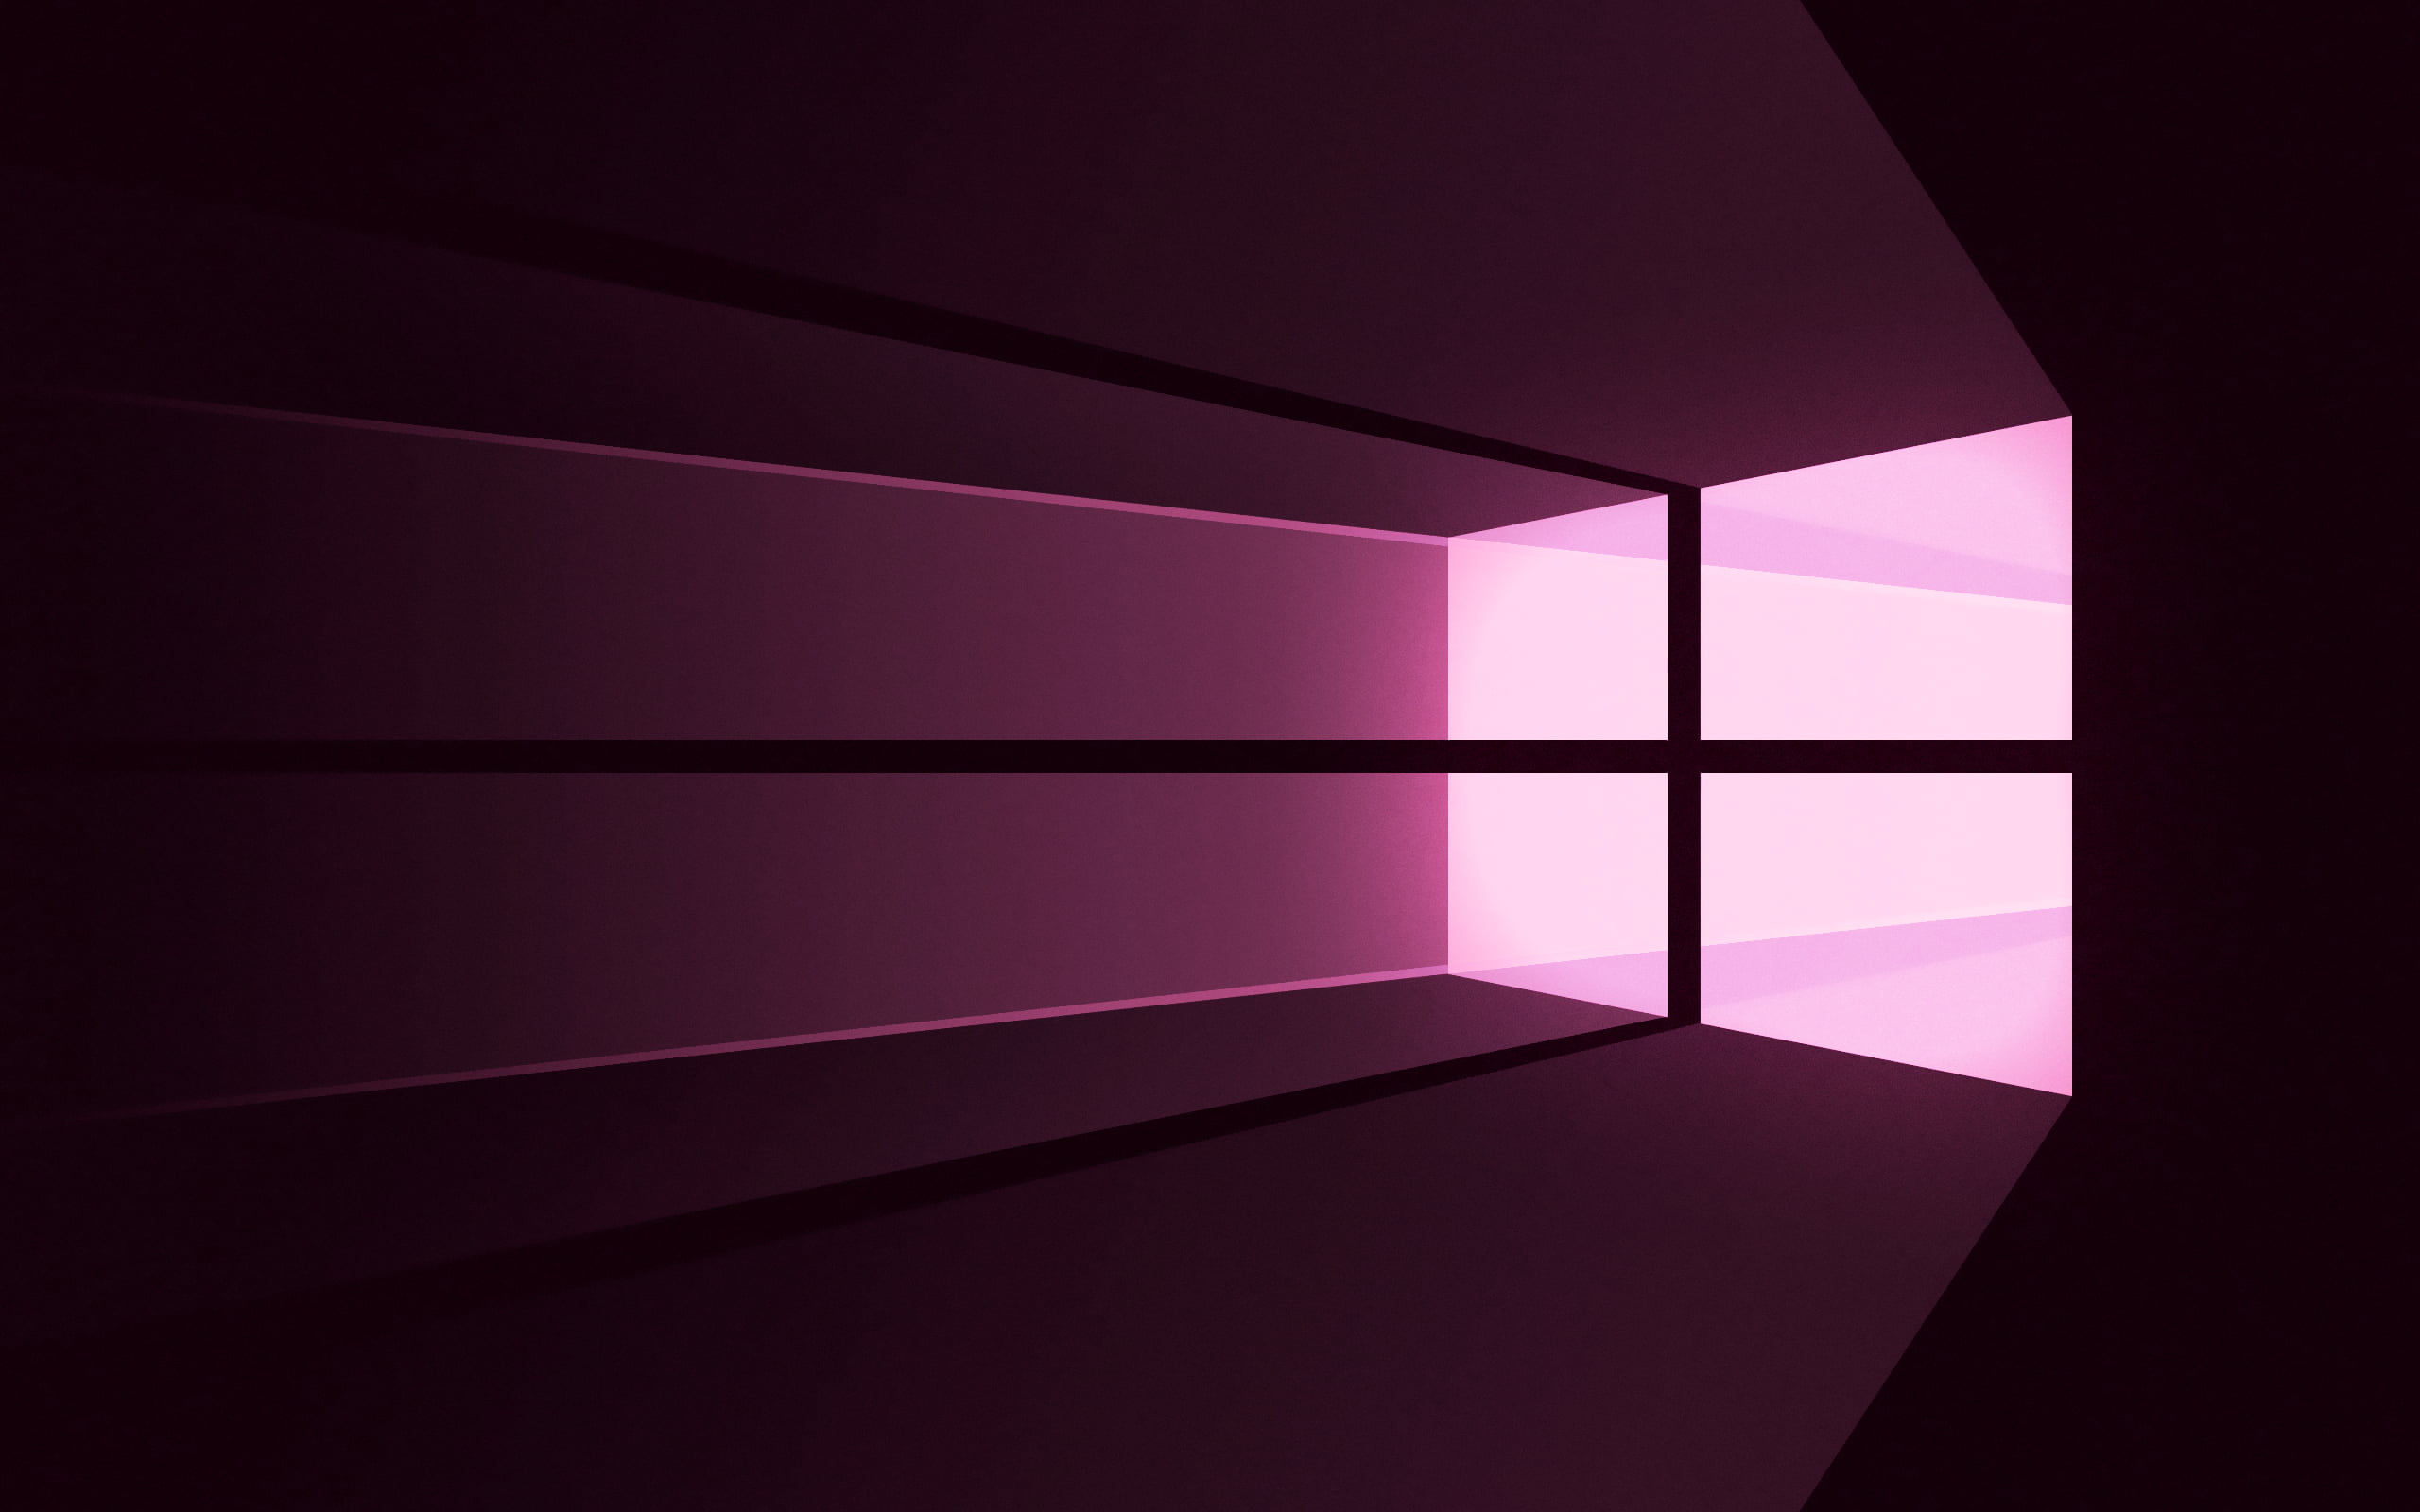 Windows 10, logo, operating system, minimalism, colorful